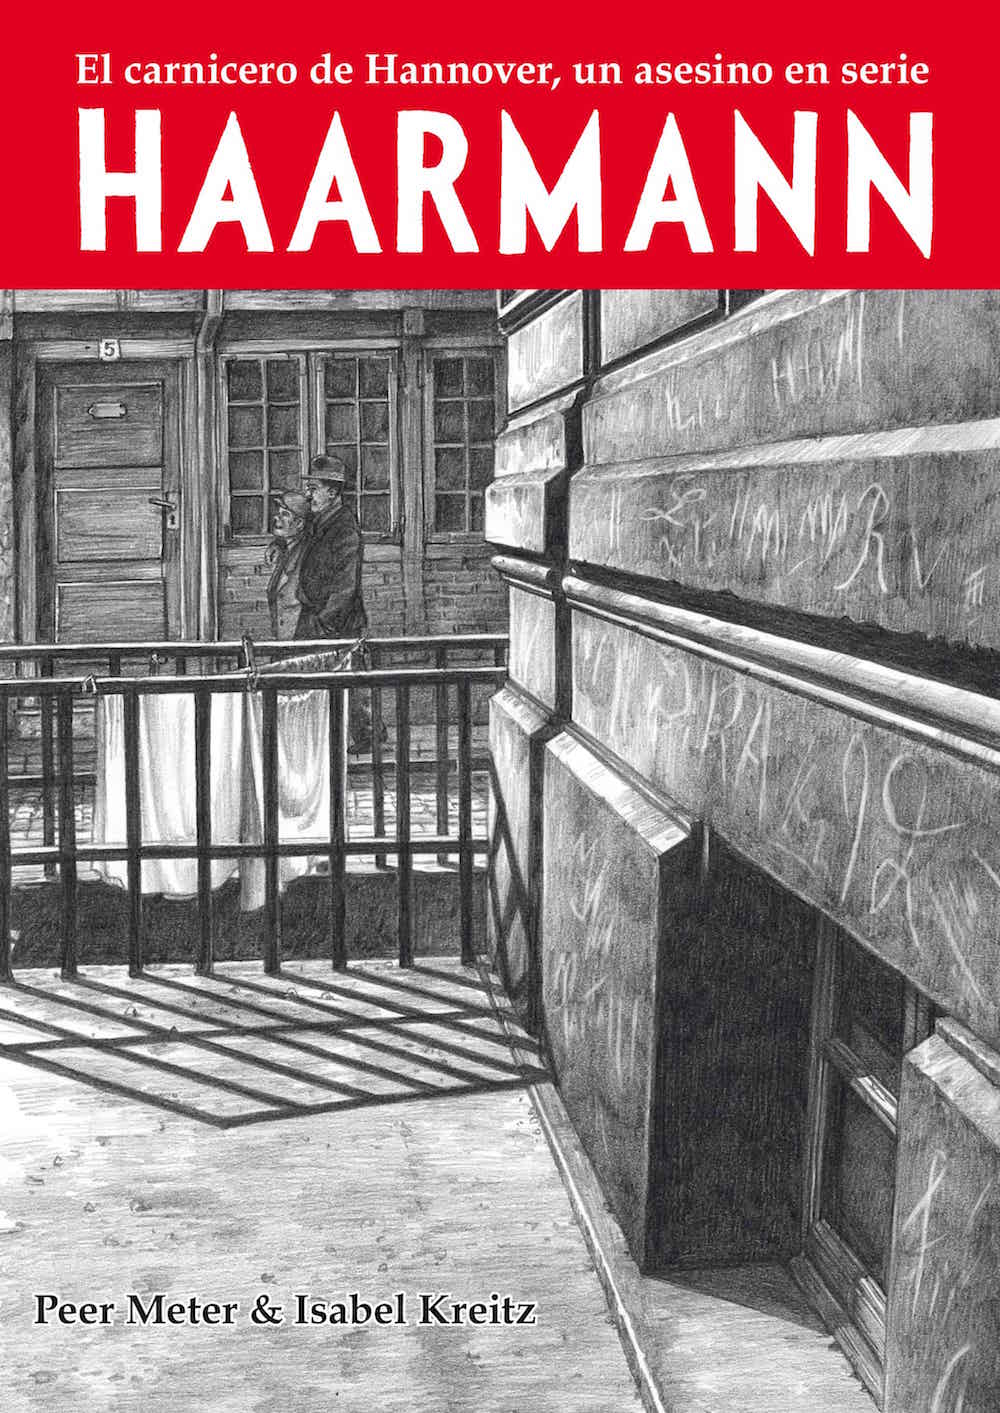 HAARMANN. EL CARNICERO DE HANNOVER, UN ASESINO EN SERIE (RUSTICA) SEGUNDA EDICION